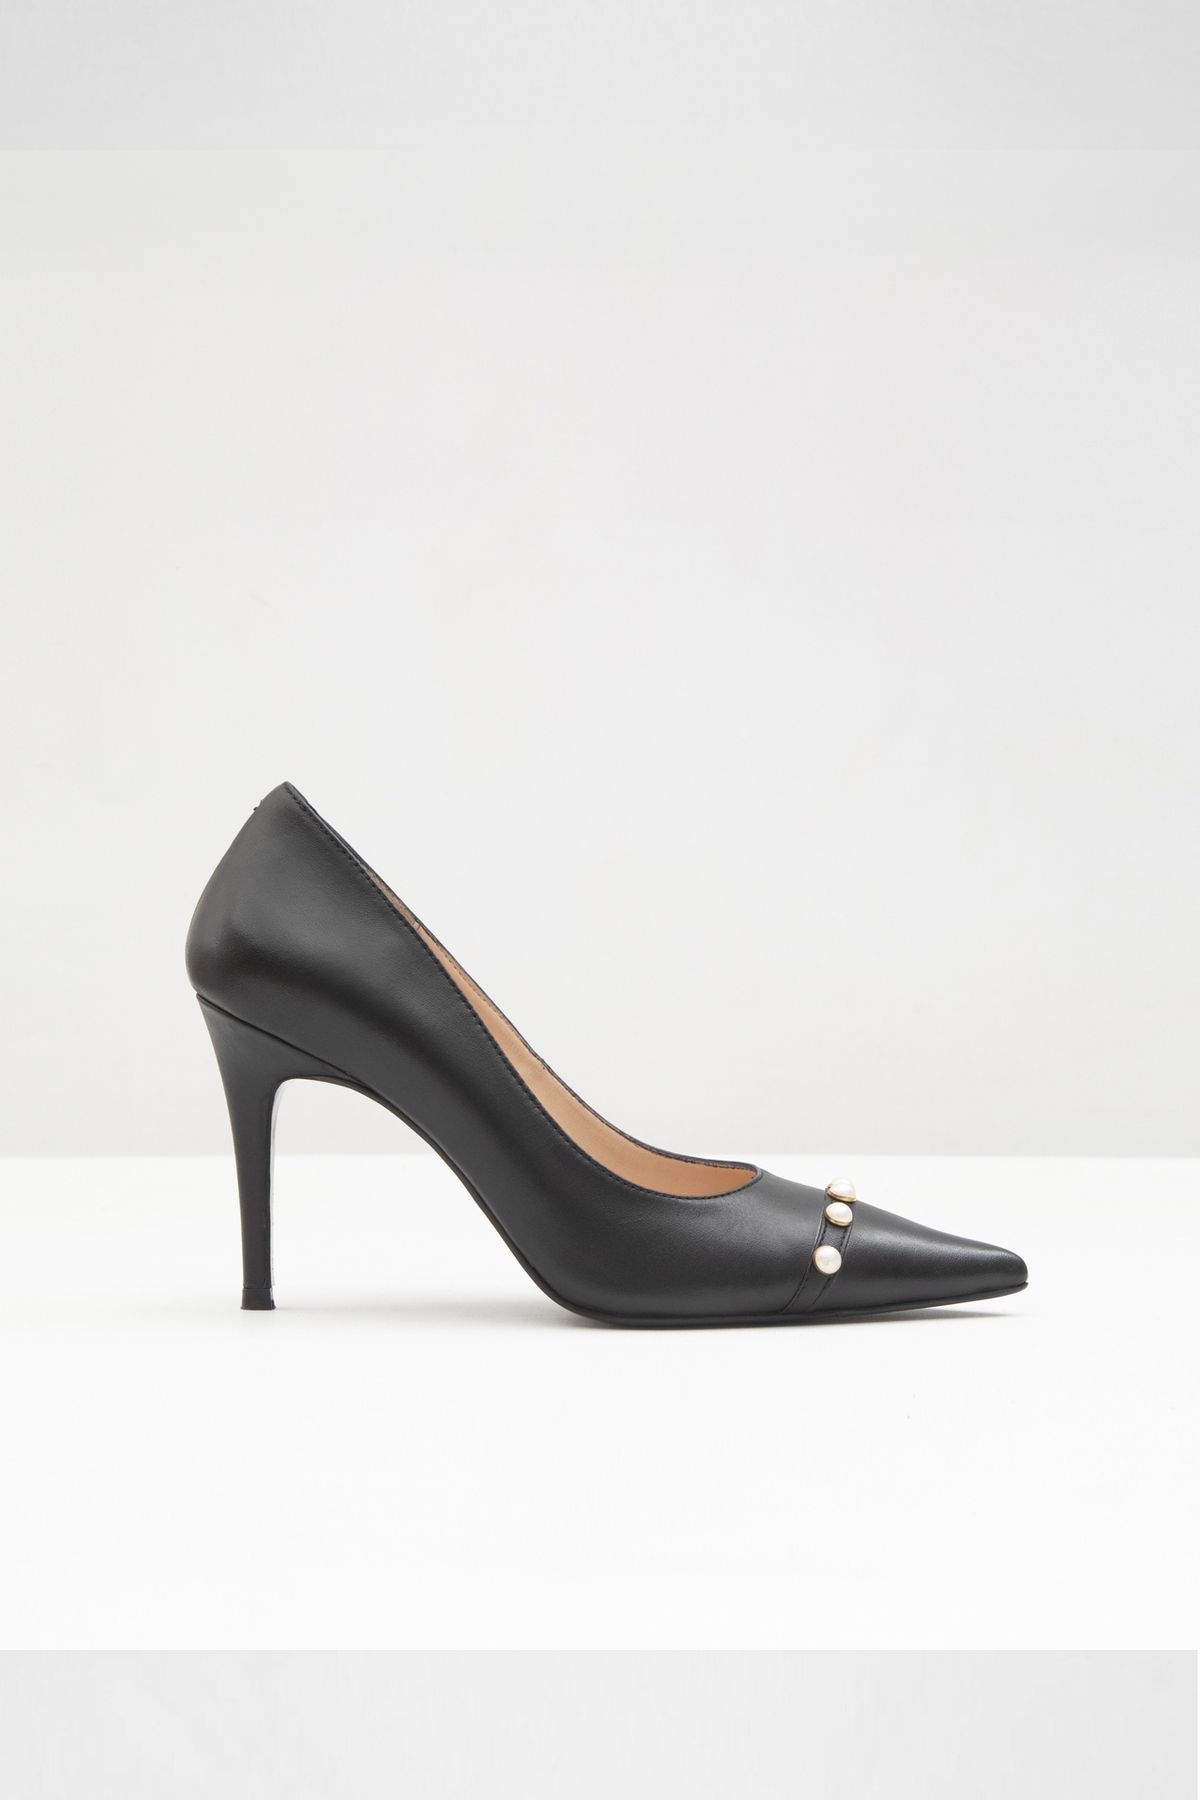 Aldo POTENZA-TR - Siyah Kadın Topuklu Ayakkabı